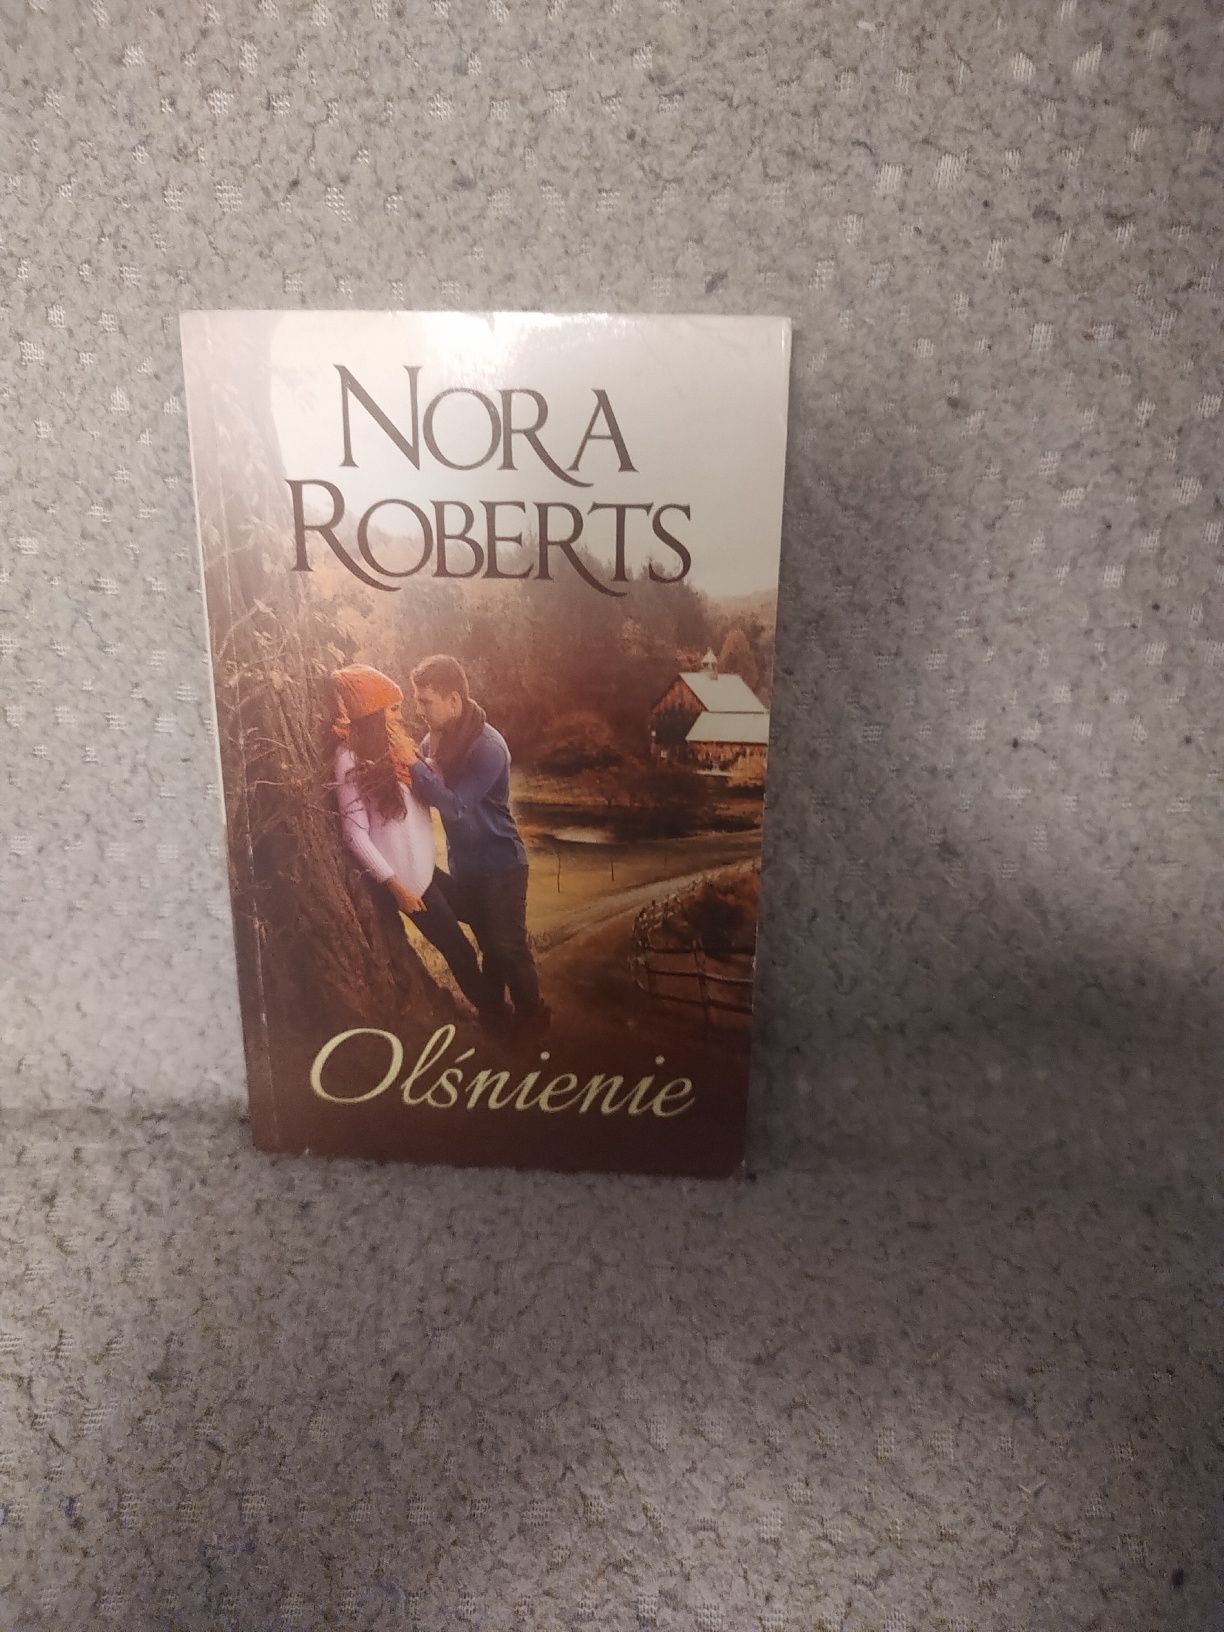 Książka Nora Roberts "Olśnienie"